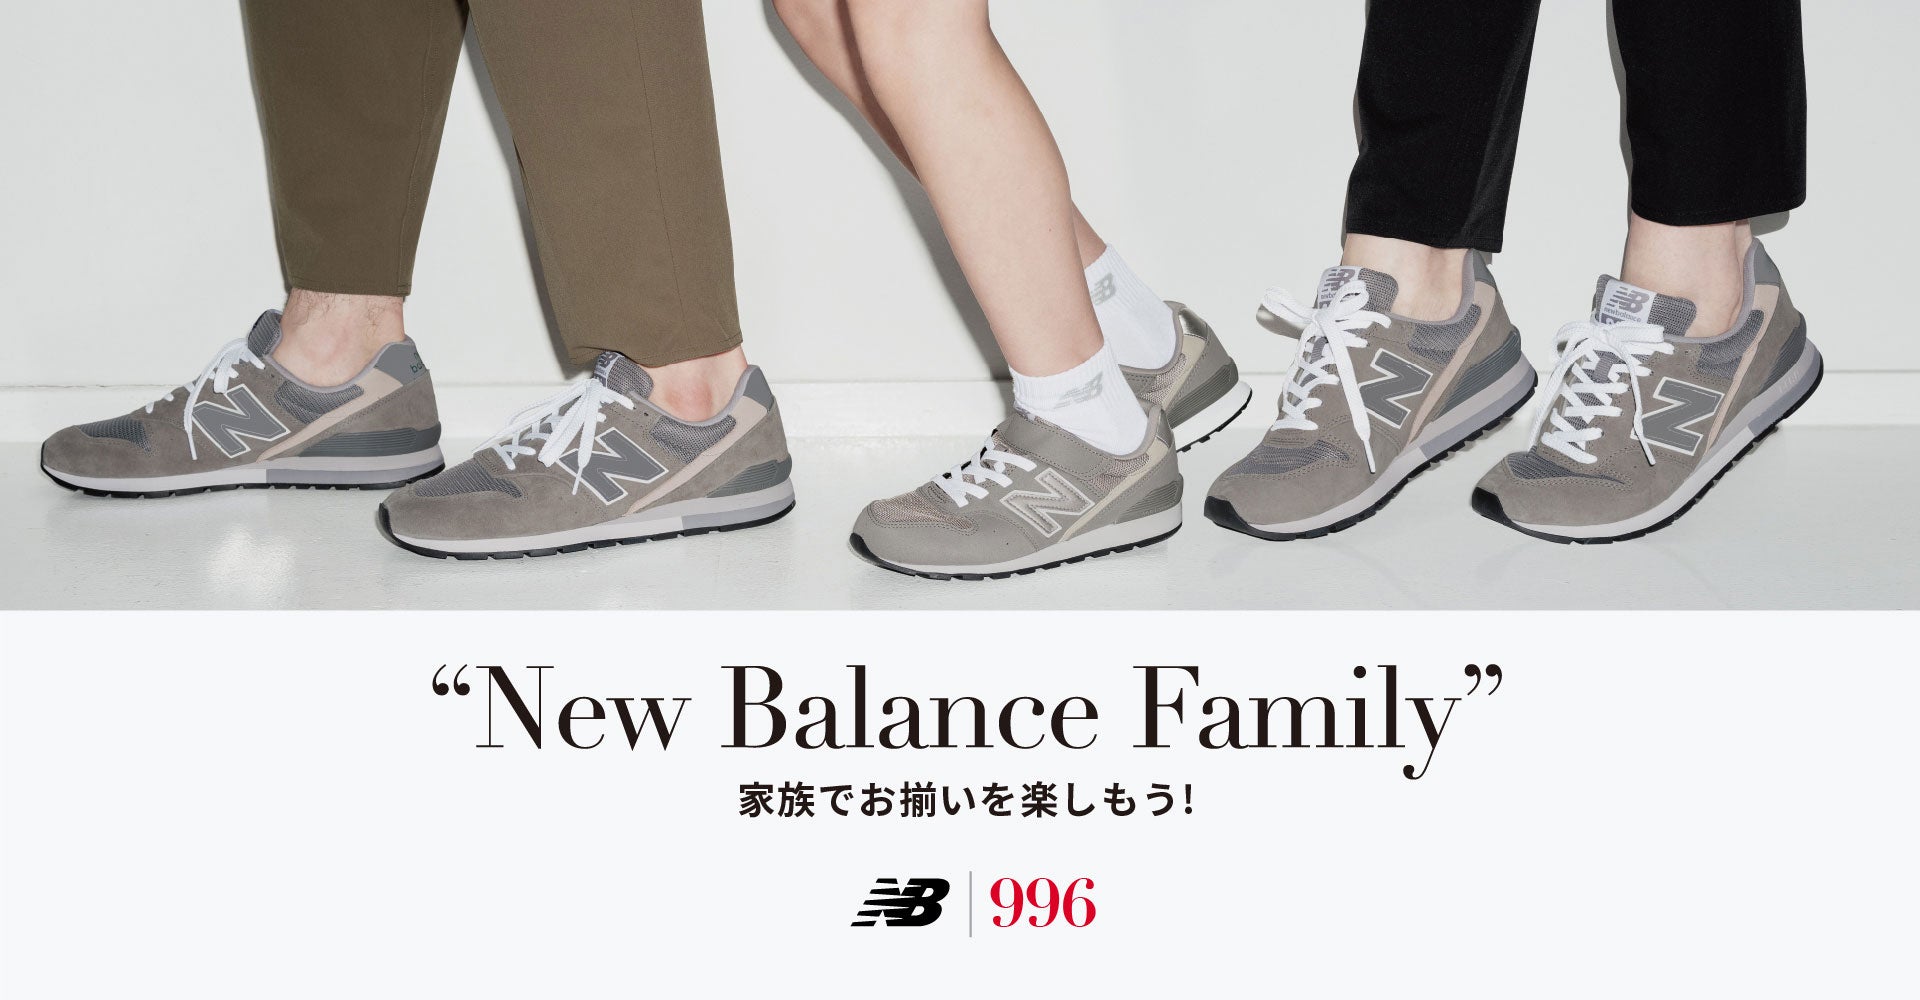 New Balance Family